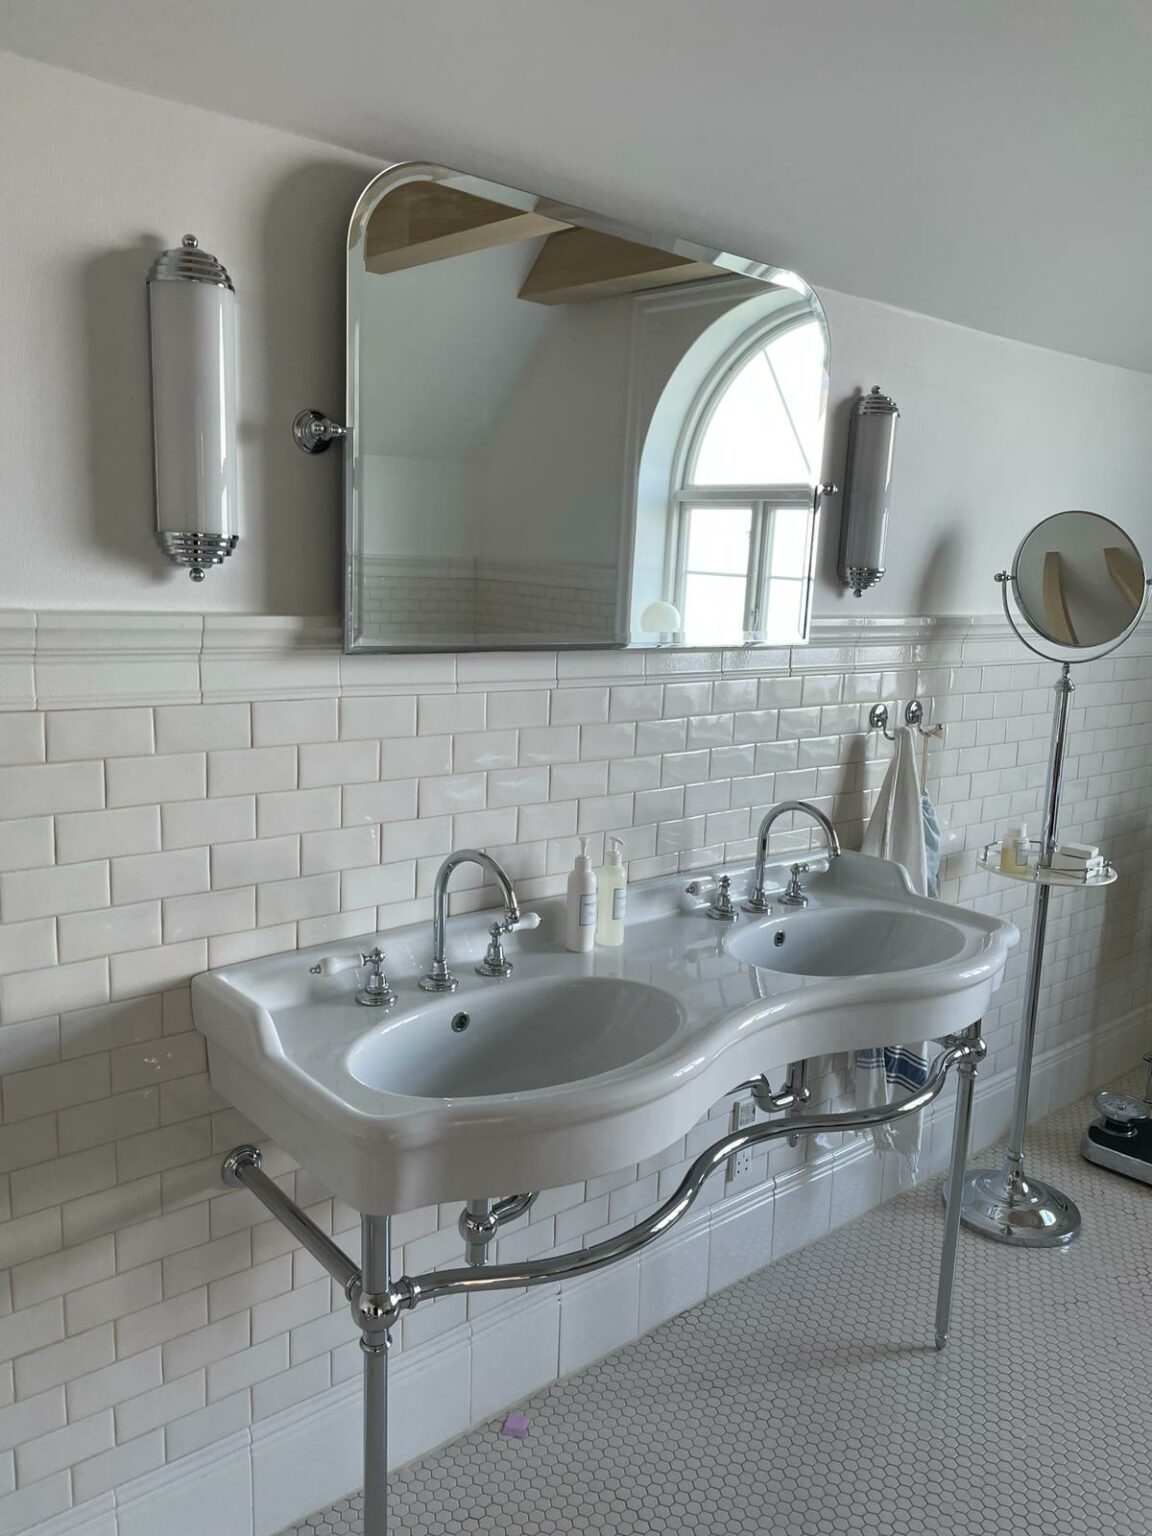 0.2. Udført total renovering og interior design af dobbelt håndvaske badeværelse.